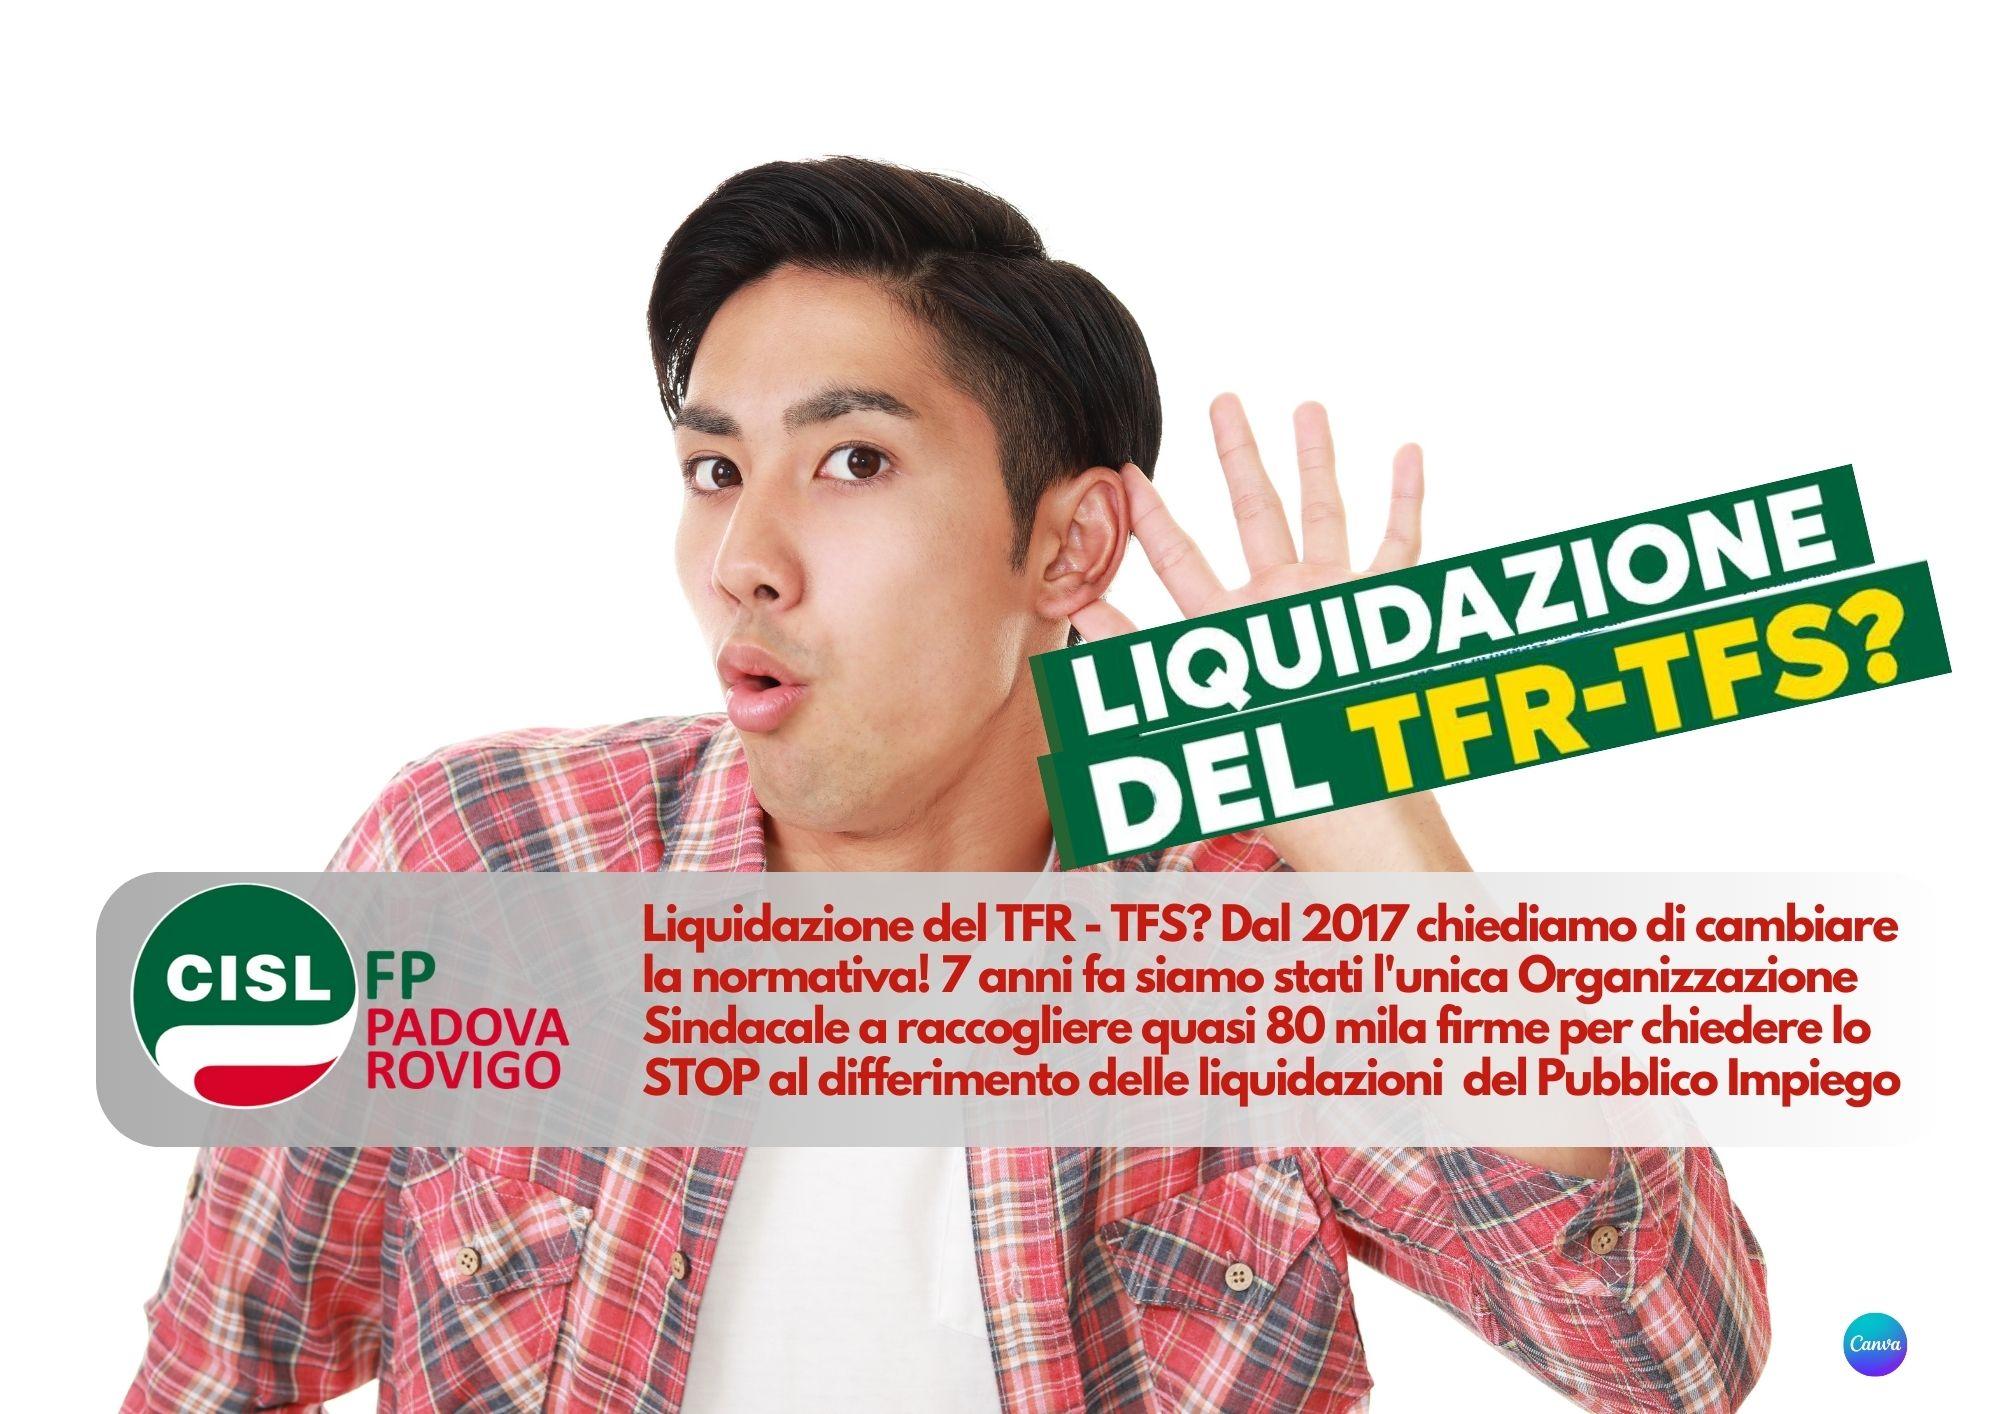 CISL FP Padova Rovigo. Liquidazione del TFR - TFS? Dal 2017 chiediamo di cambiare la normativa!